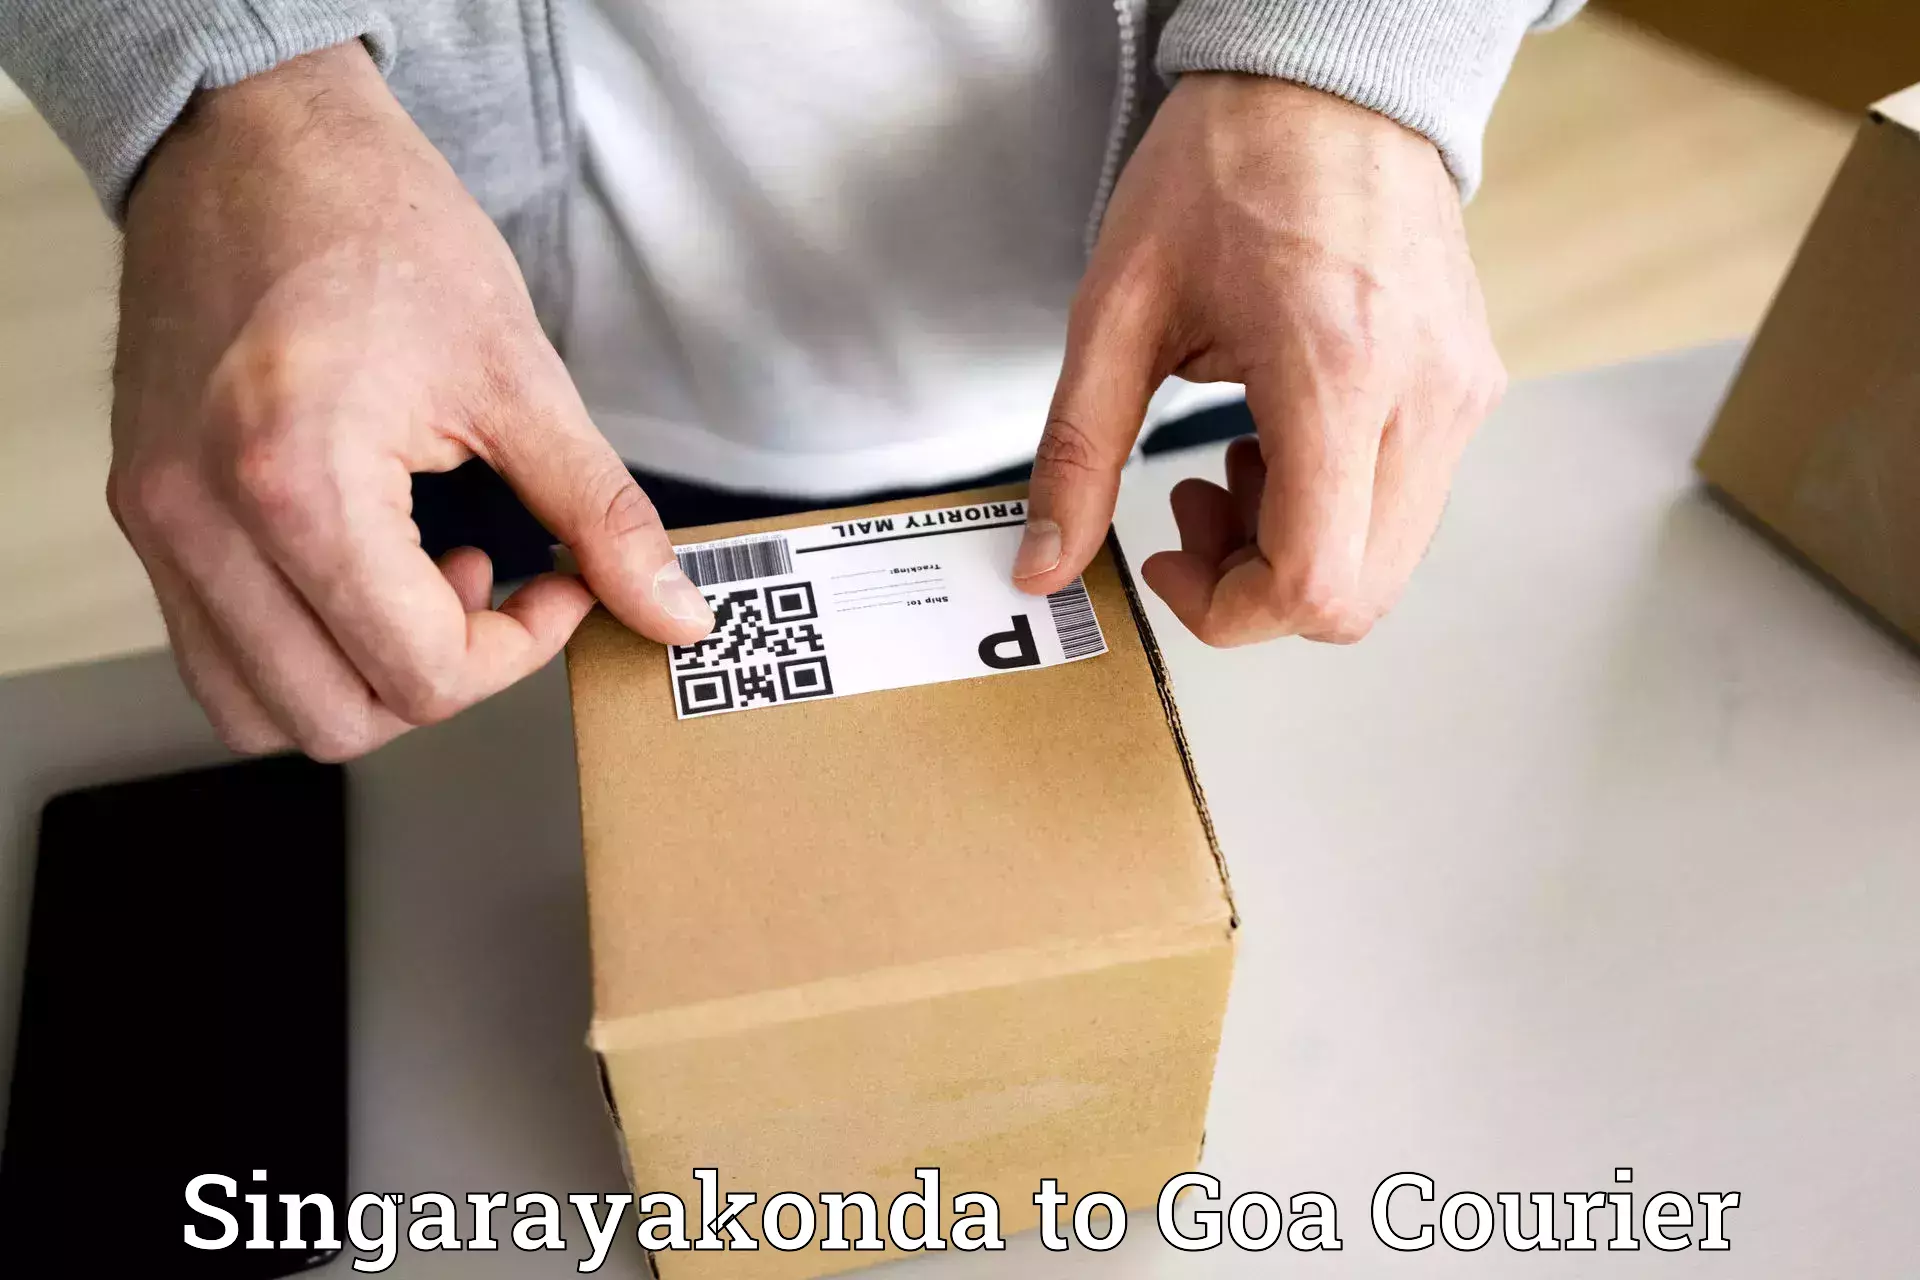 Multi-national courier services Singarayakonda to Ponda